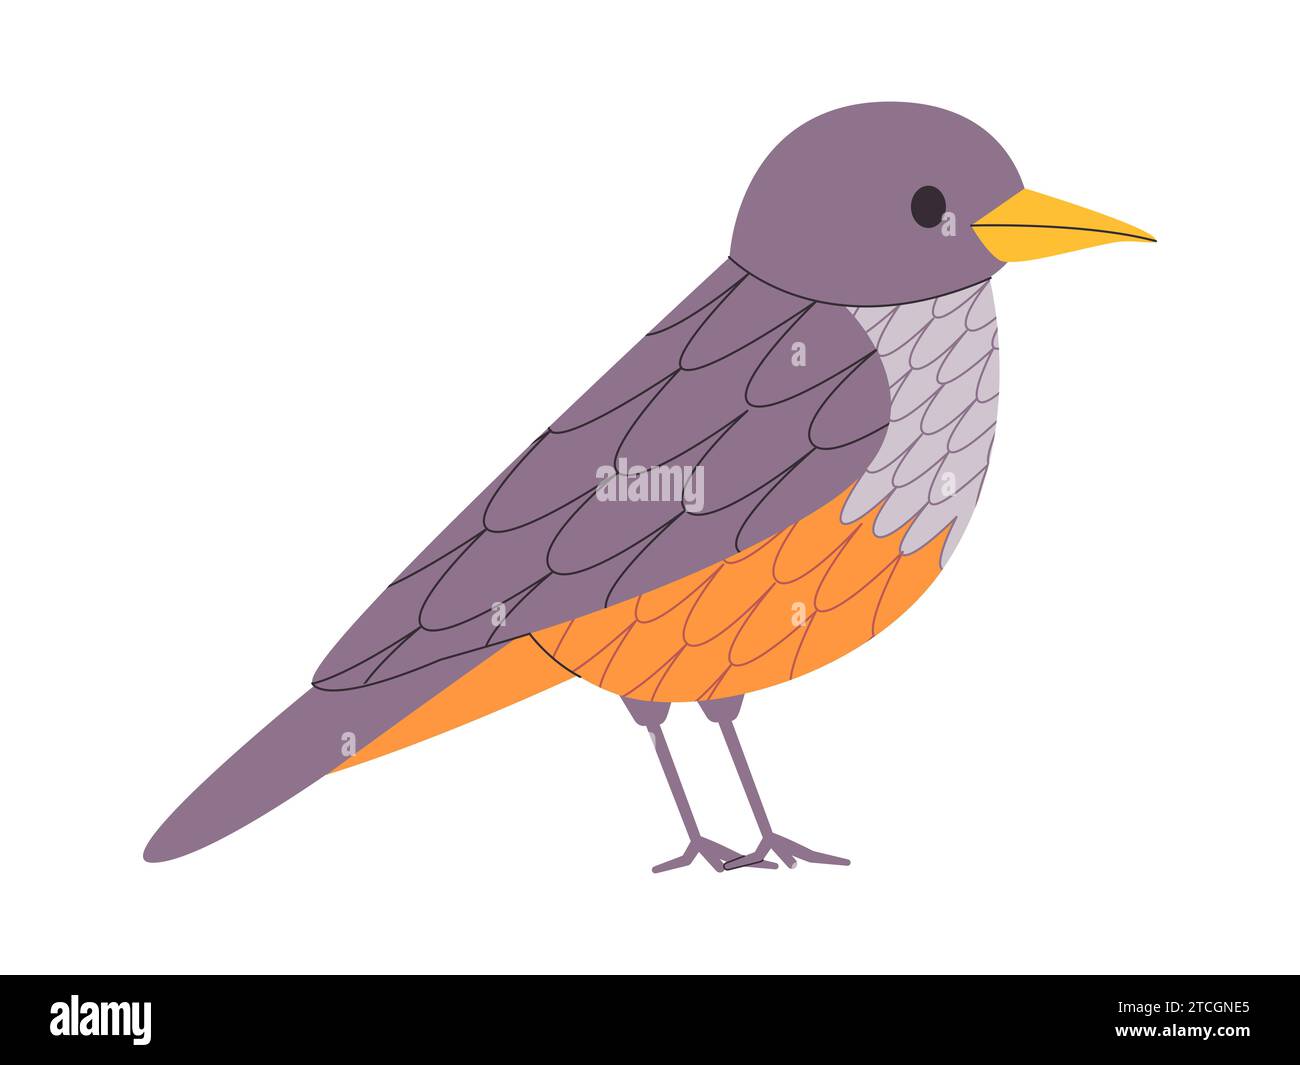 couleur grise et orange petit oiseau rufous bellied muguet espèce jolie nature animal faune créature Illustration de Vecteur